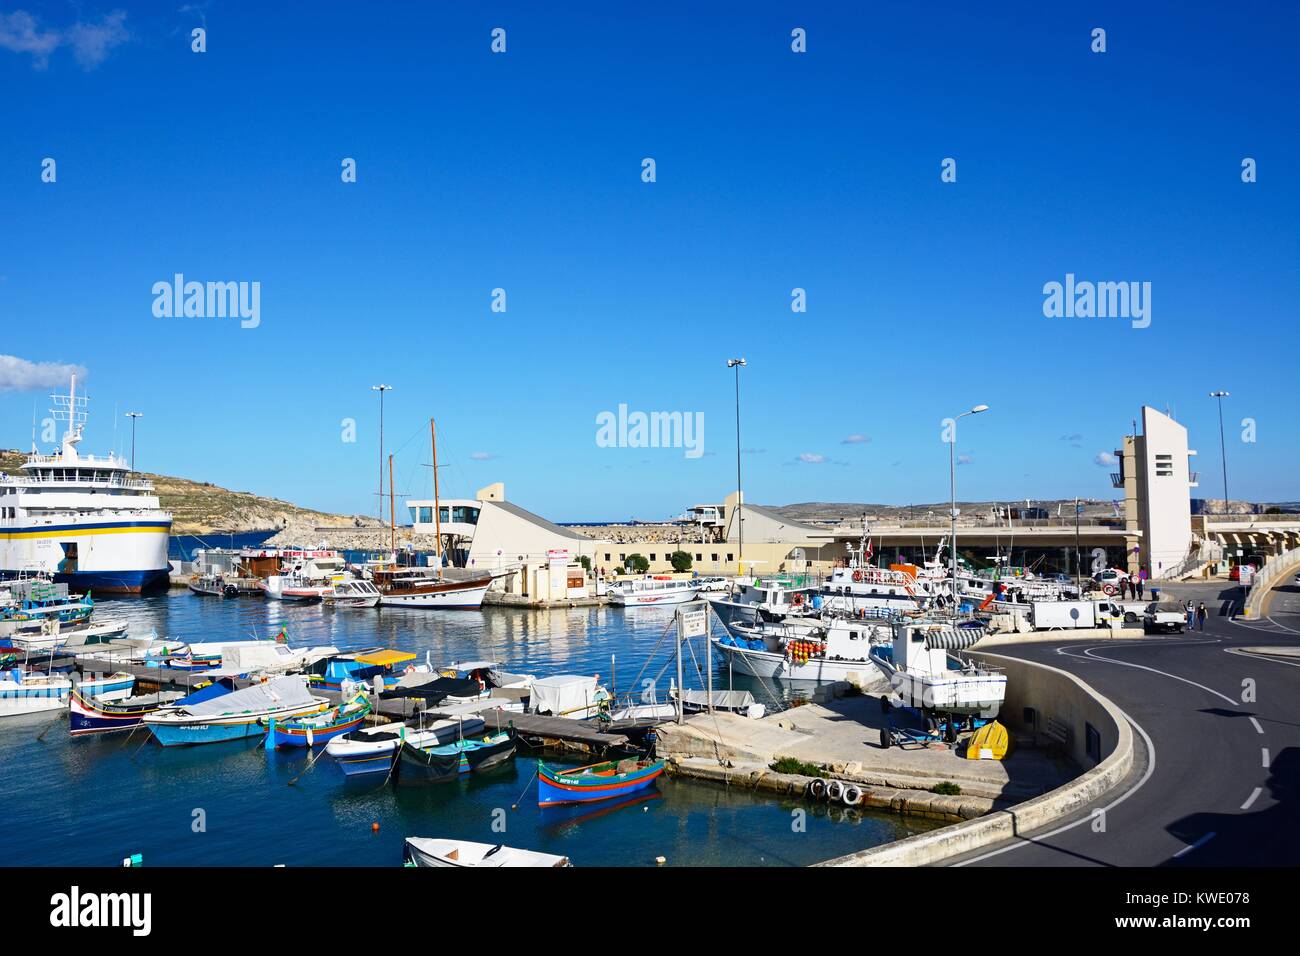 Bateau de pêche colorés amarrés dans le port avec le Gozo ferry amarré dans le port à l'arrière, Mgarr, Gozo, Malte, l'Europe. Banque D'Images